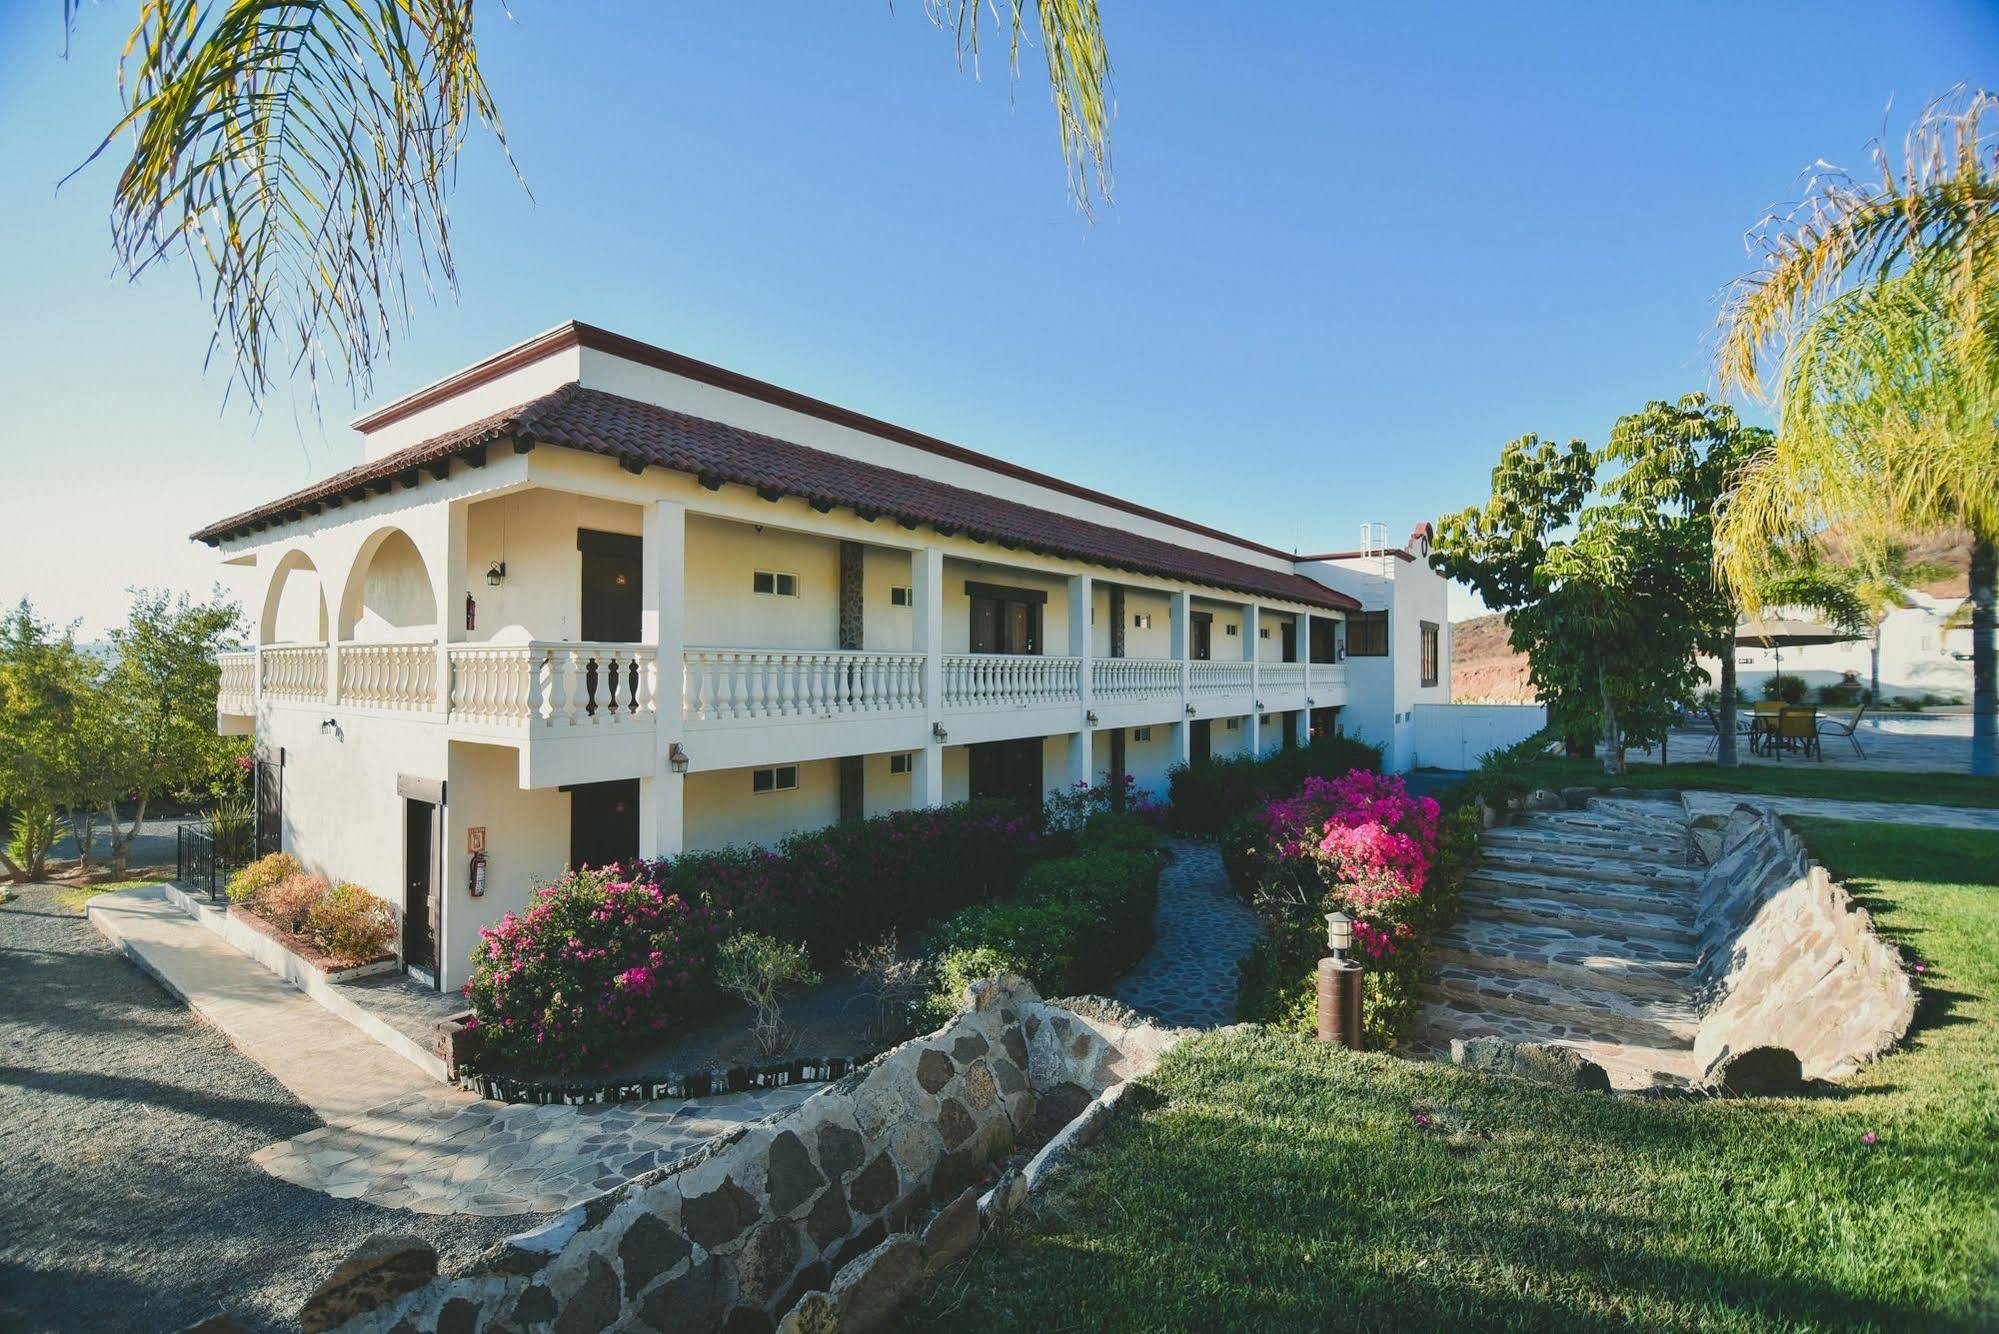 Hacienda Guadalupe Hotel Exterior photo